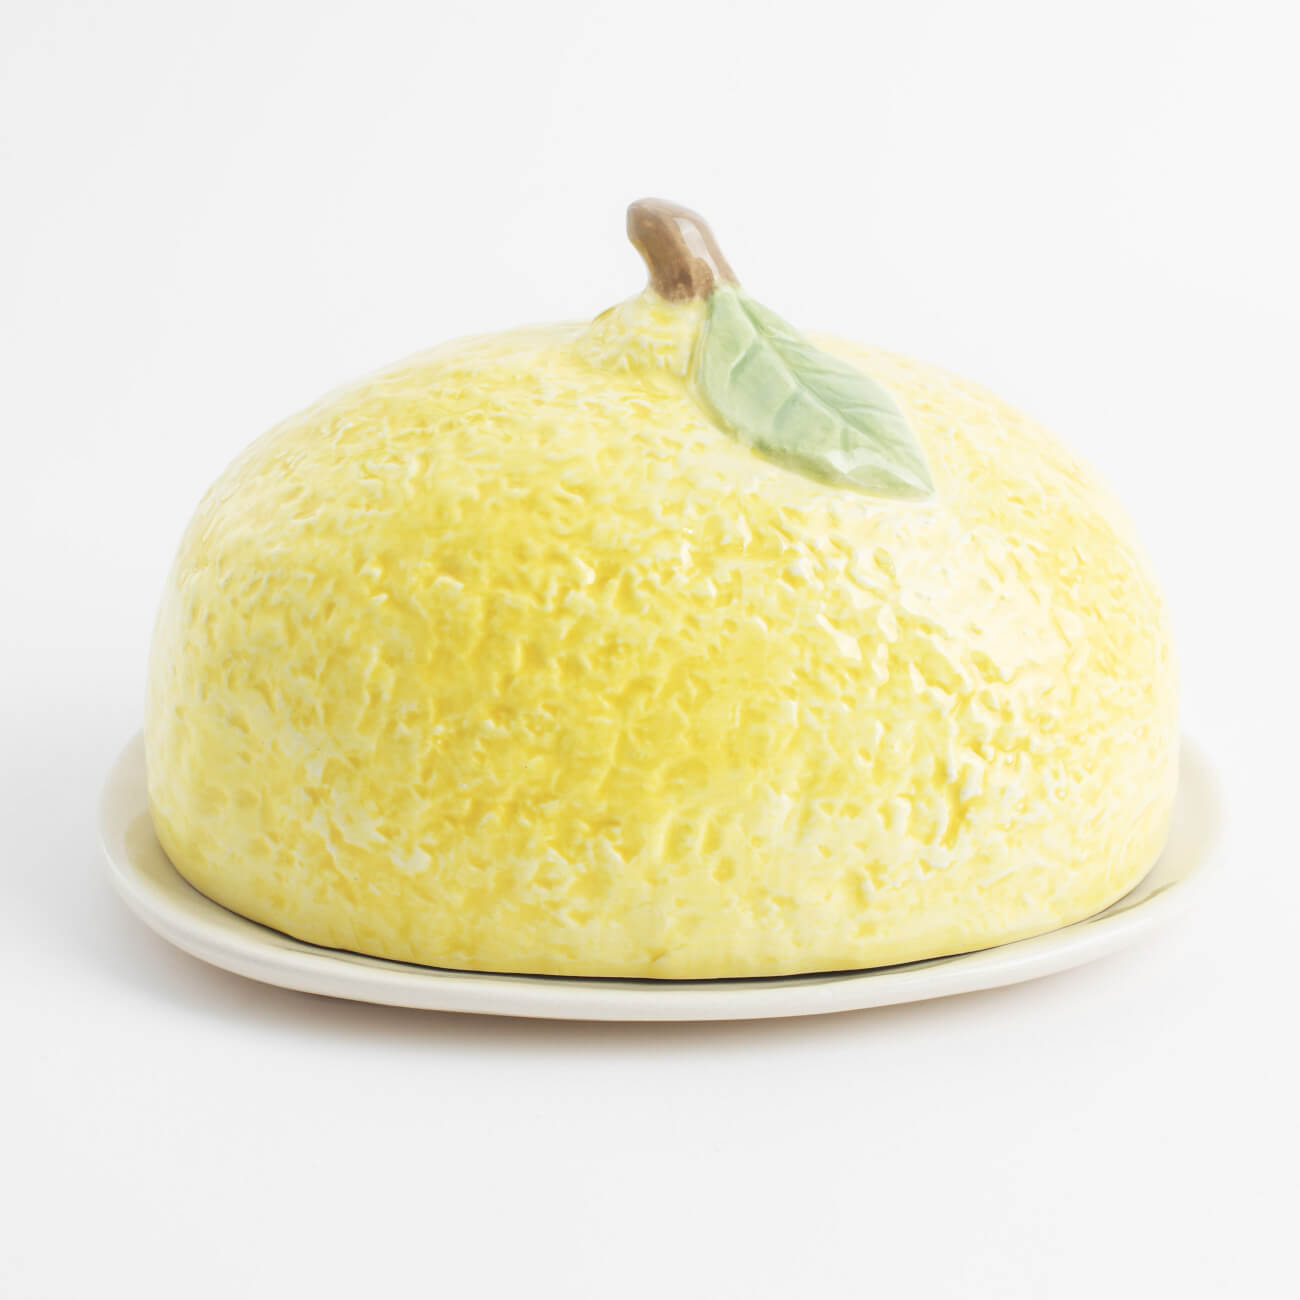 Масленка, 18 см, керамика, овальная, желтая, Лимон, Sicily in bloom масленка нагнетатель сварис 300 мл